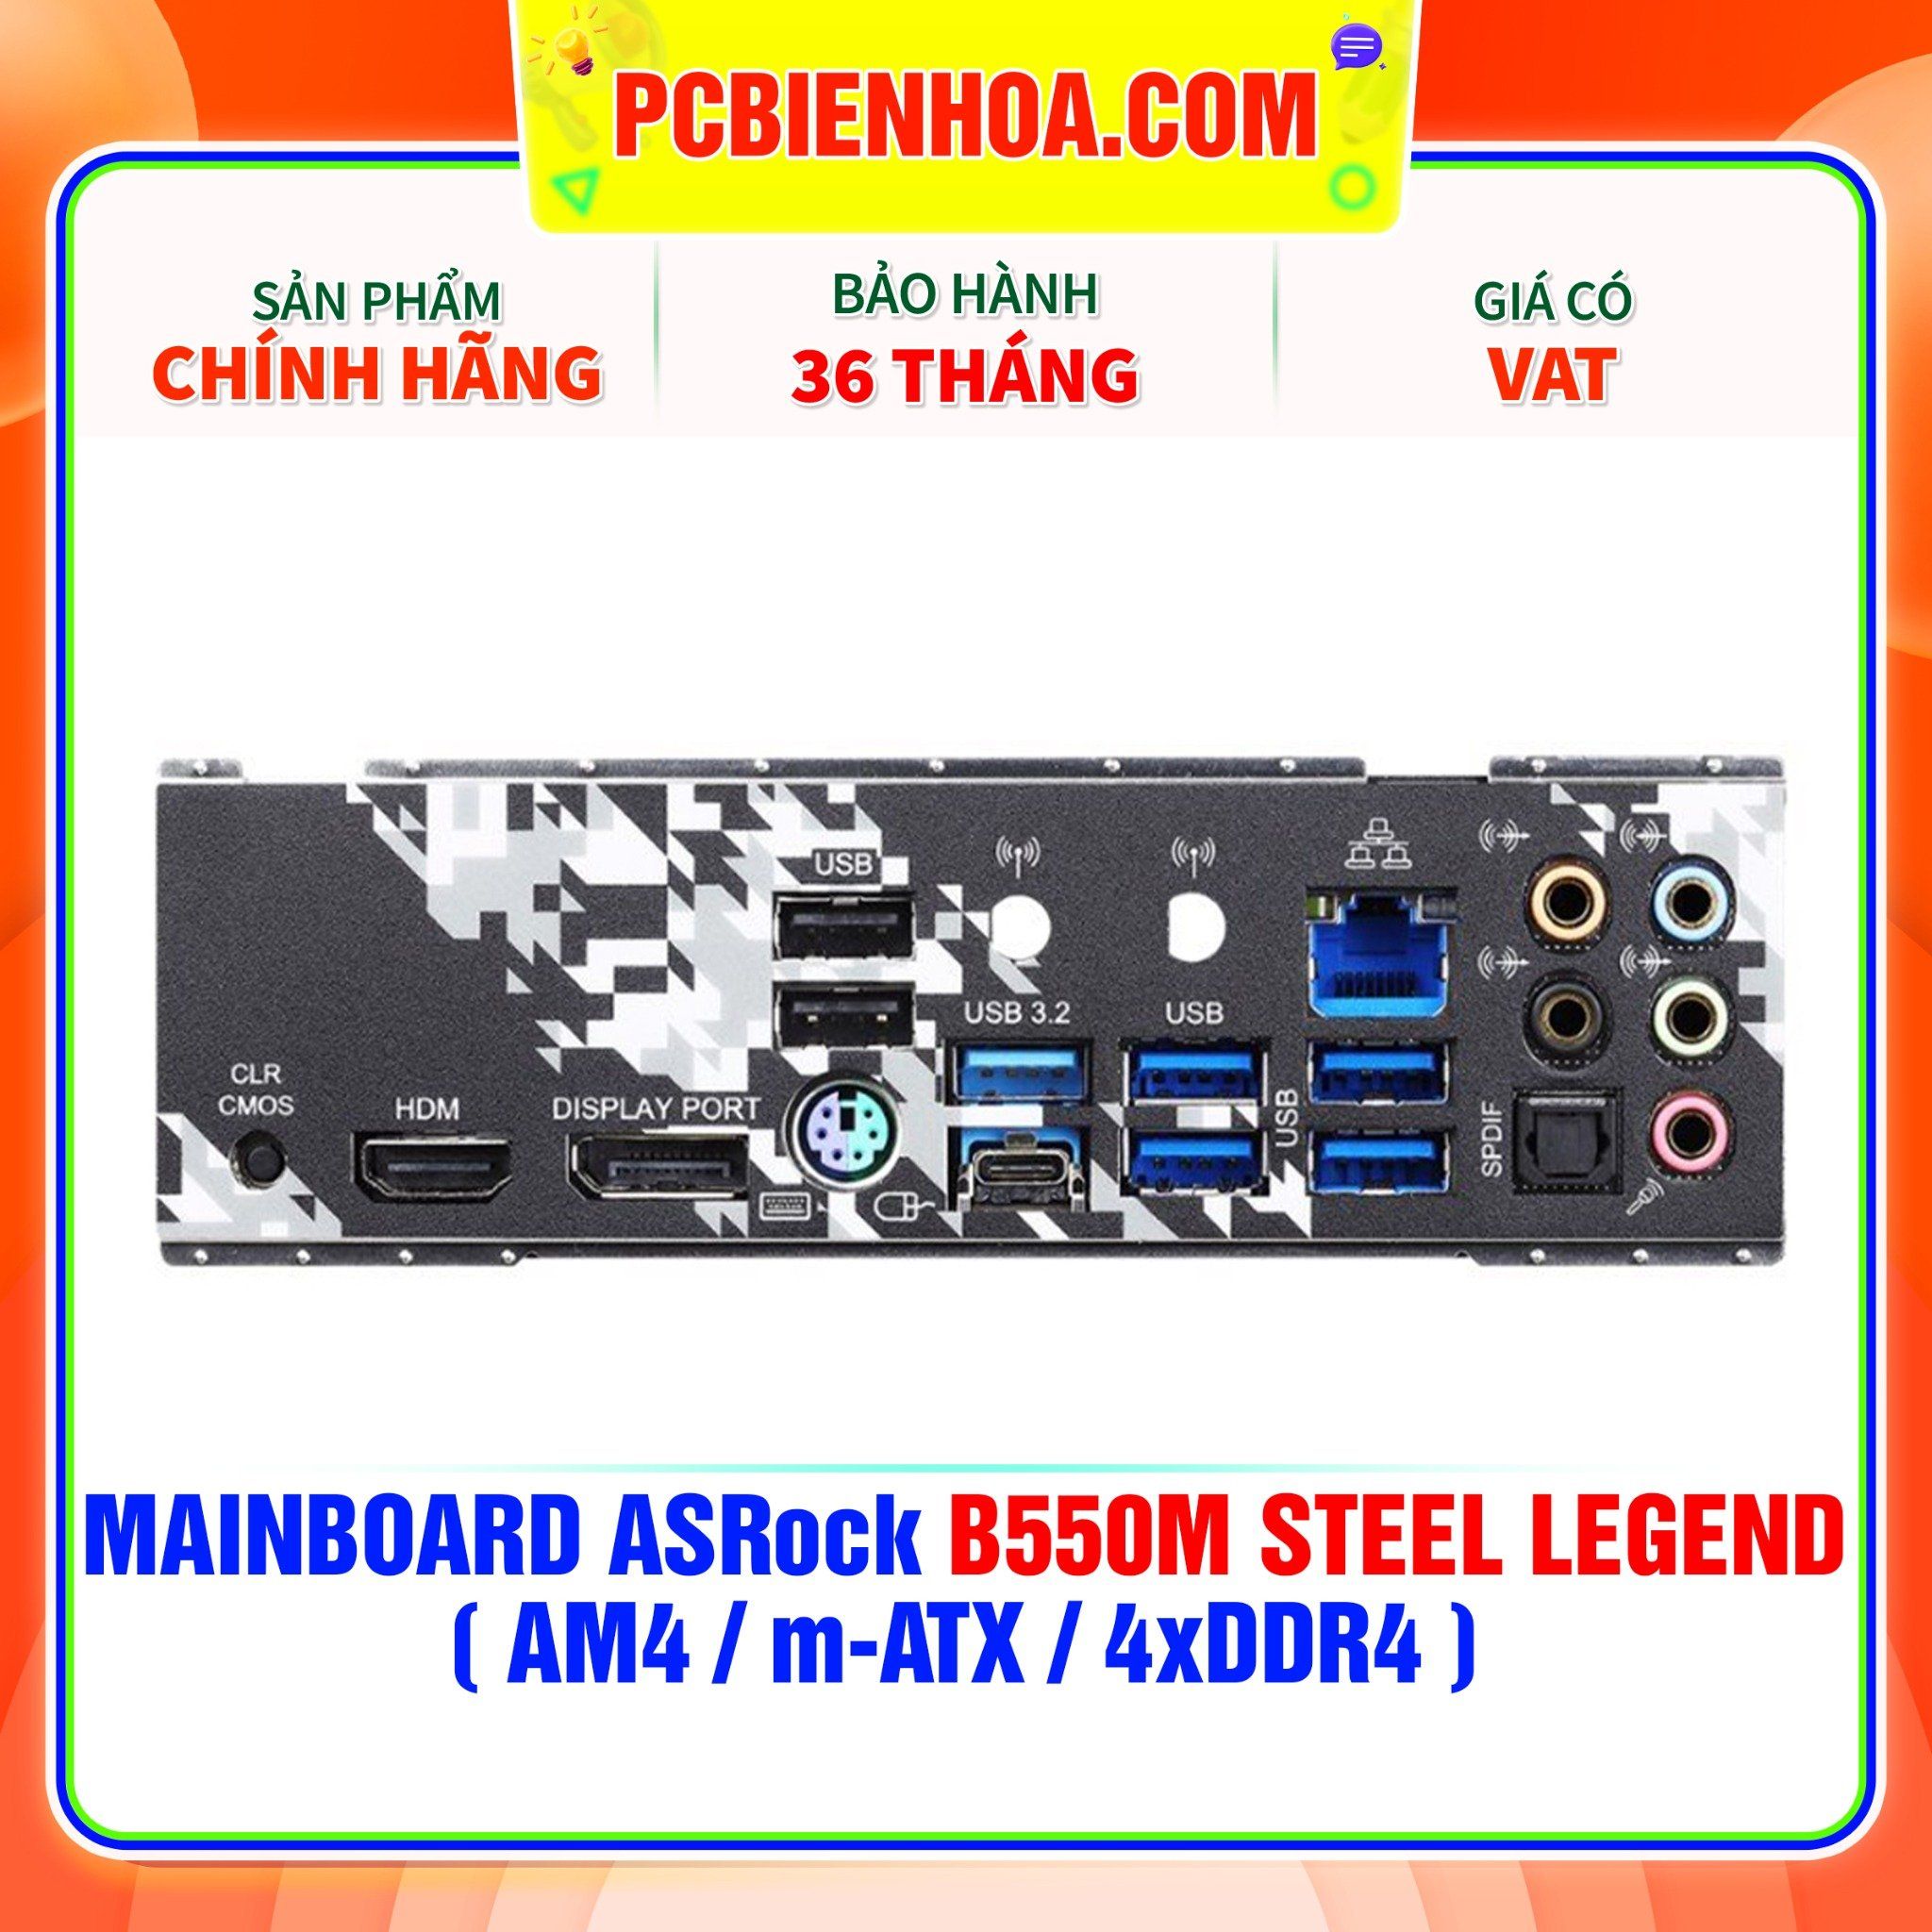  MAINBOARD ASRock B550M STEEL LEGEND ( AM4 / m-ATX / 4xDDR4 ) 